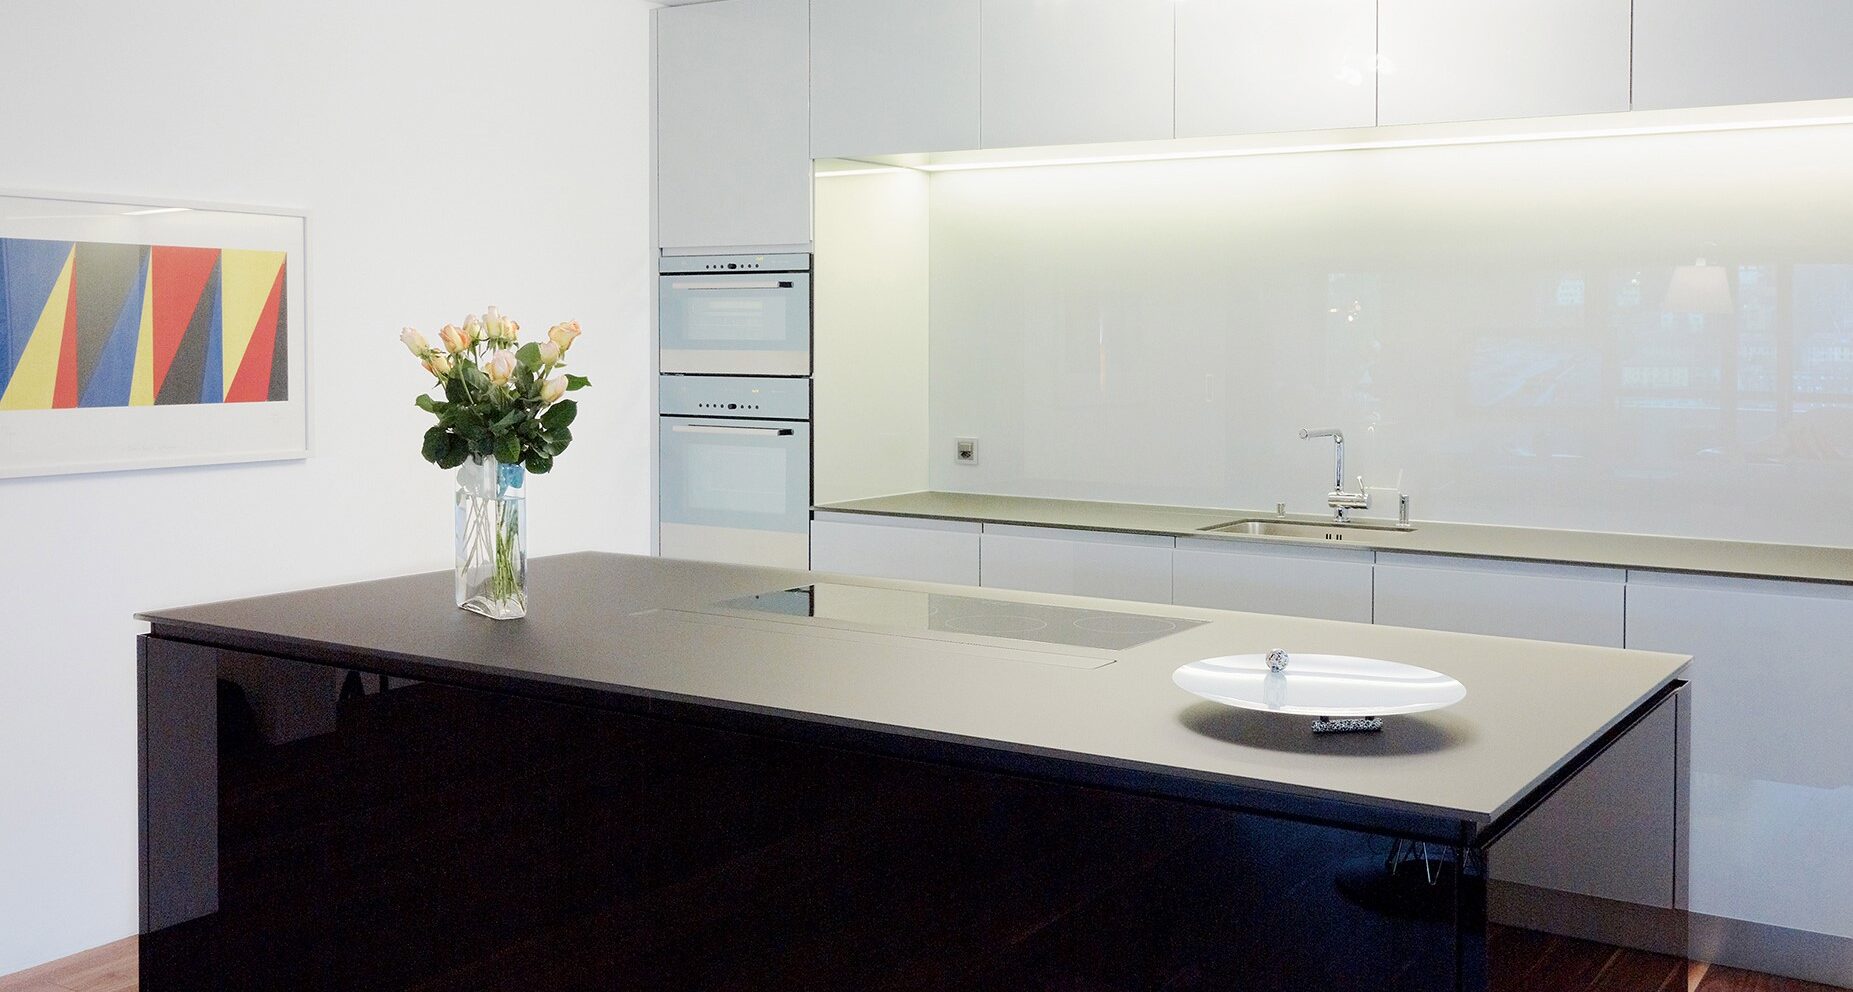 Individuell designte, satinierte Glasrückwand in einer modernen Küche, präsentiert von SET Glasbau